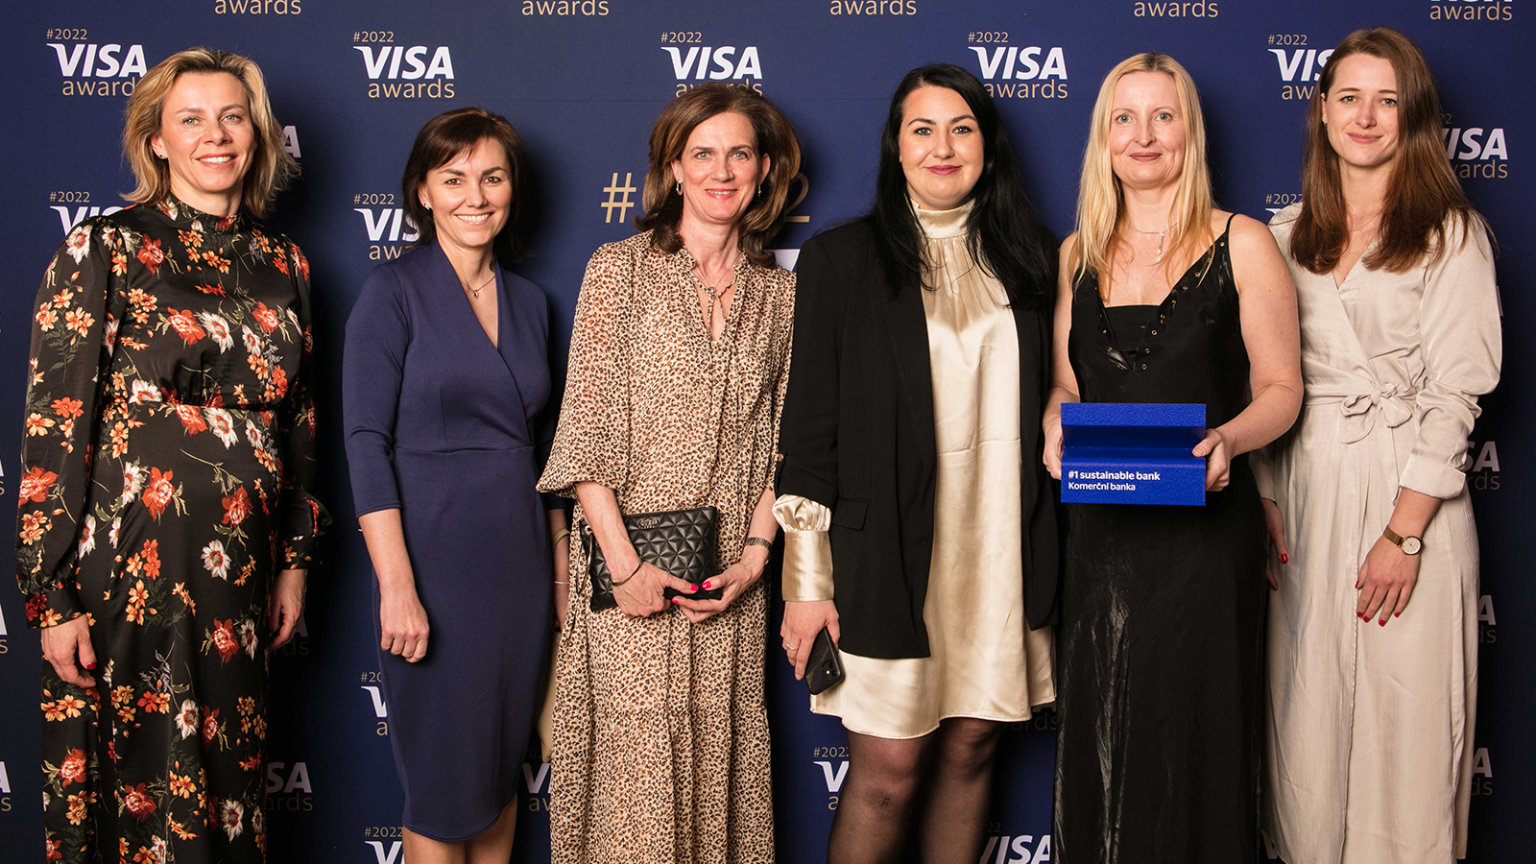 Ocenn Visa Awards v kategorii #1sustainable bank si za rok 2022 odnesla Komern banka.